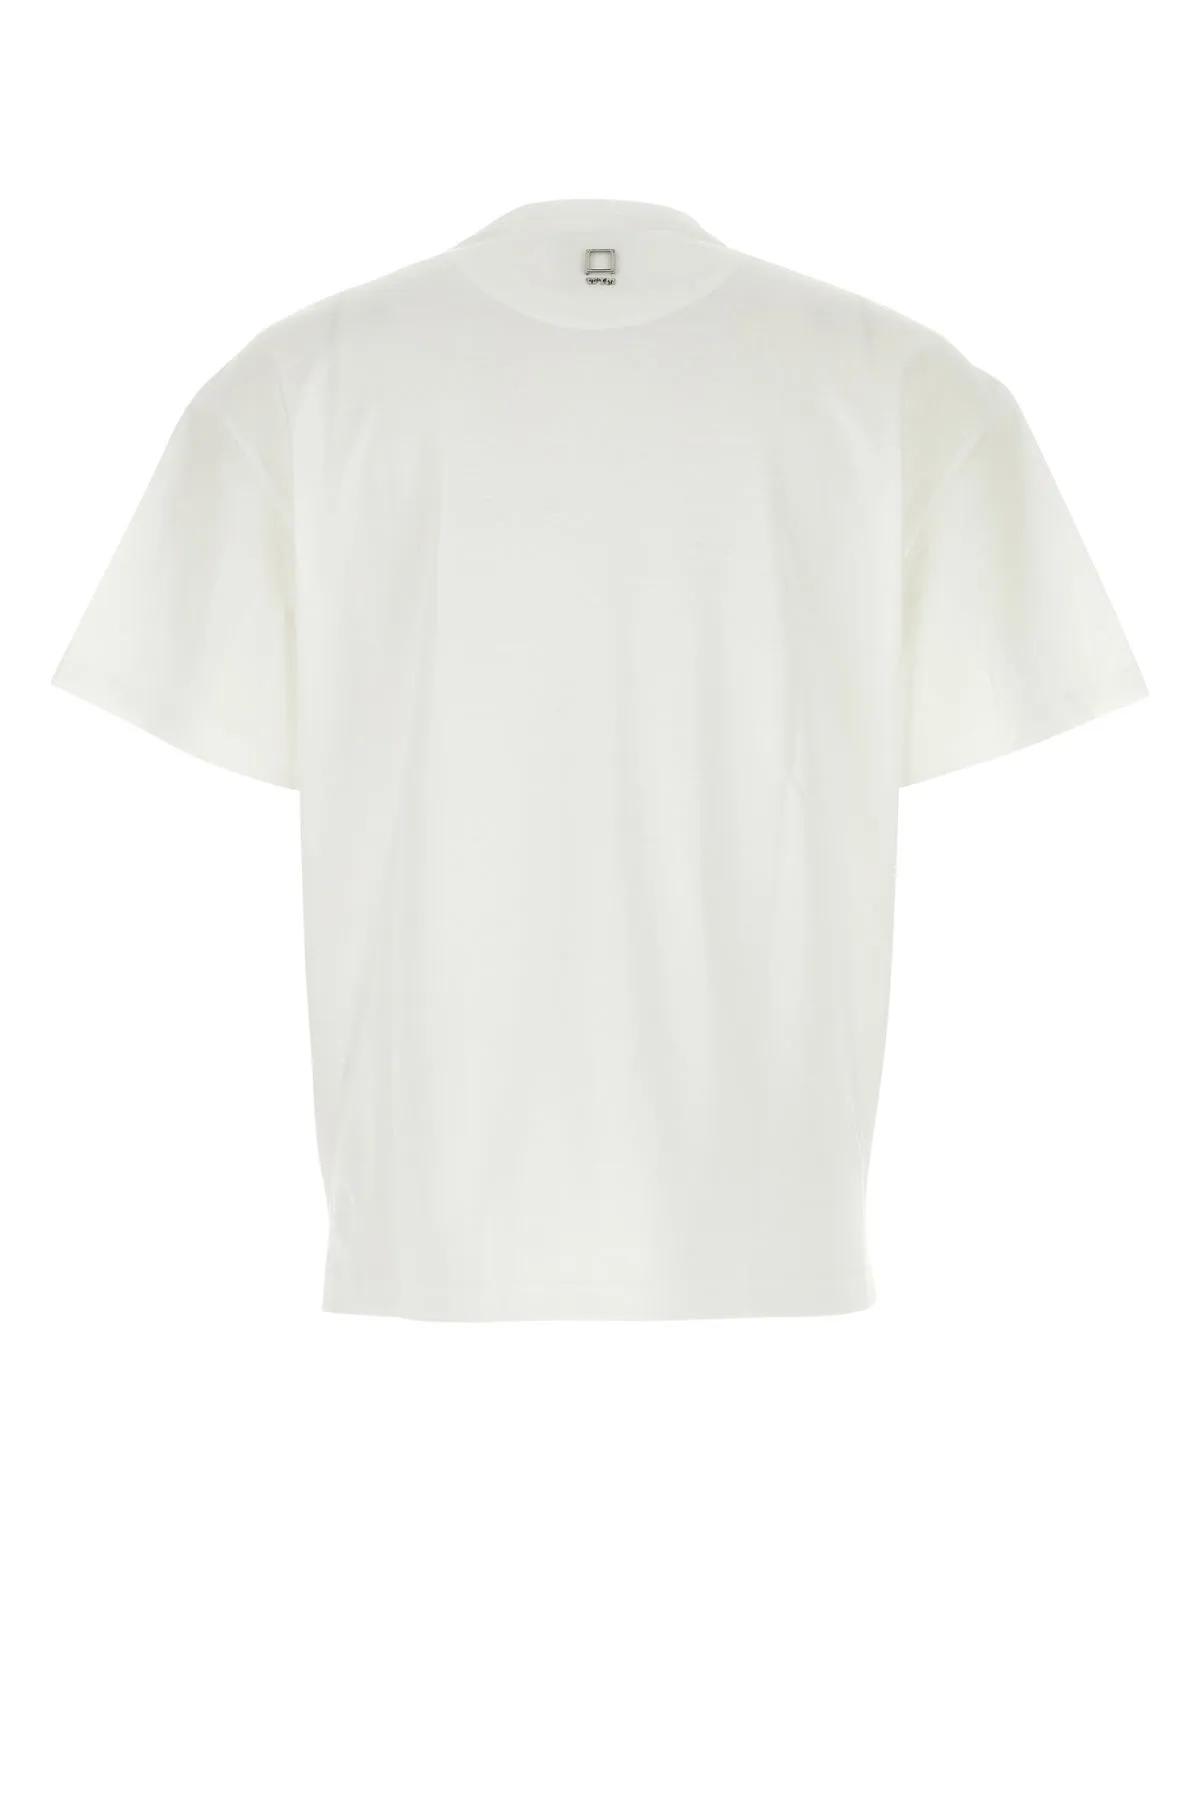 Shop Wooyoungmi White Cotton T-shirt